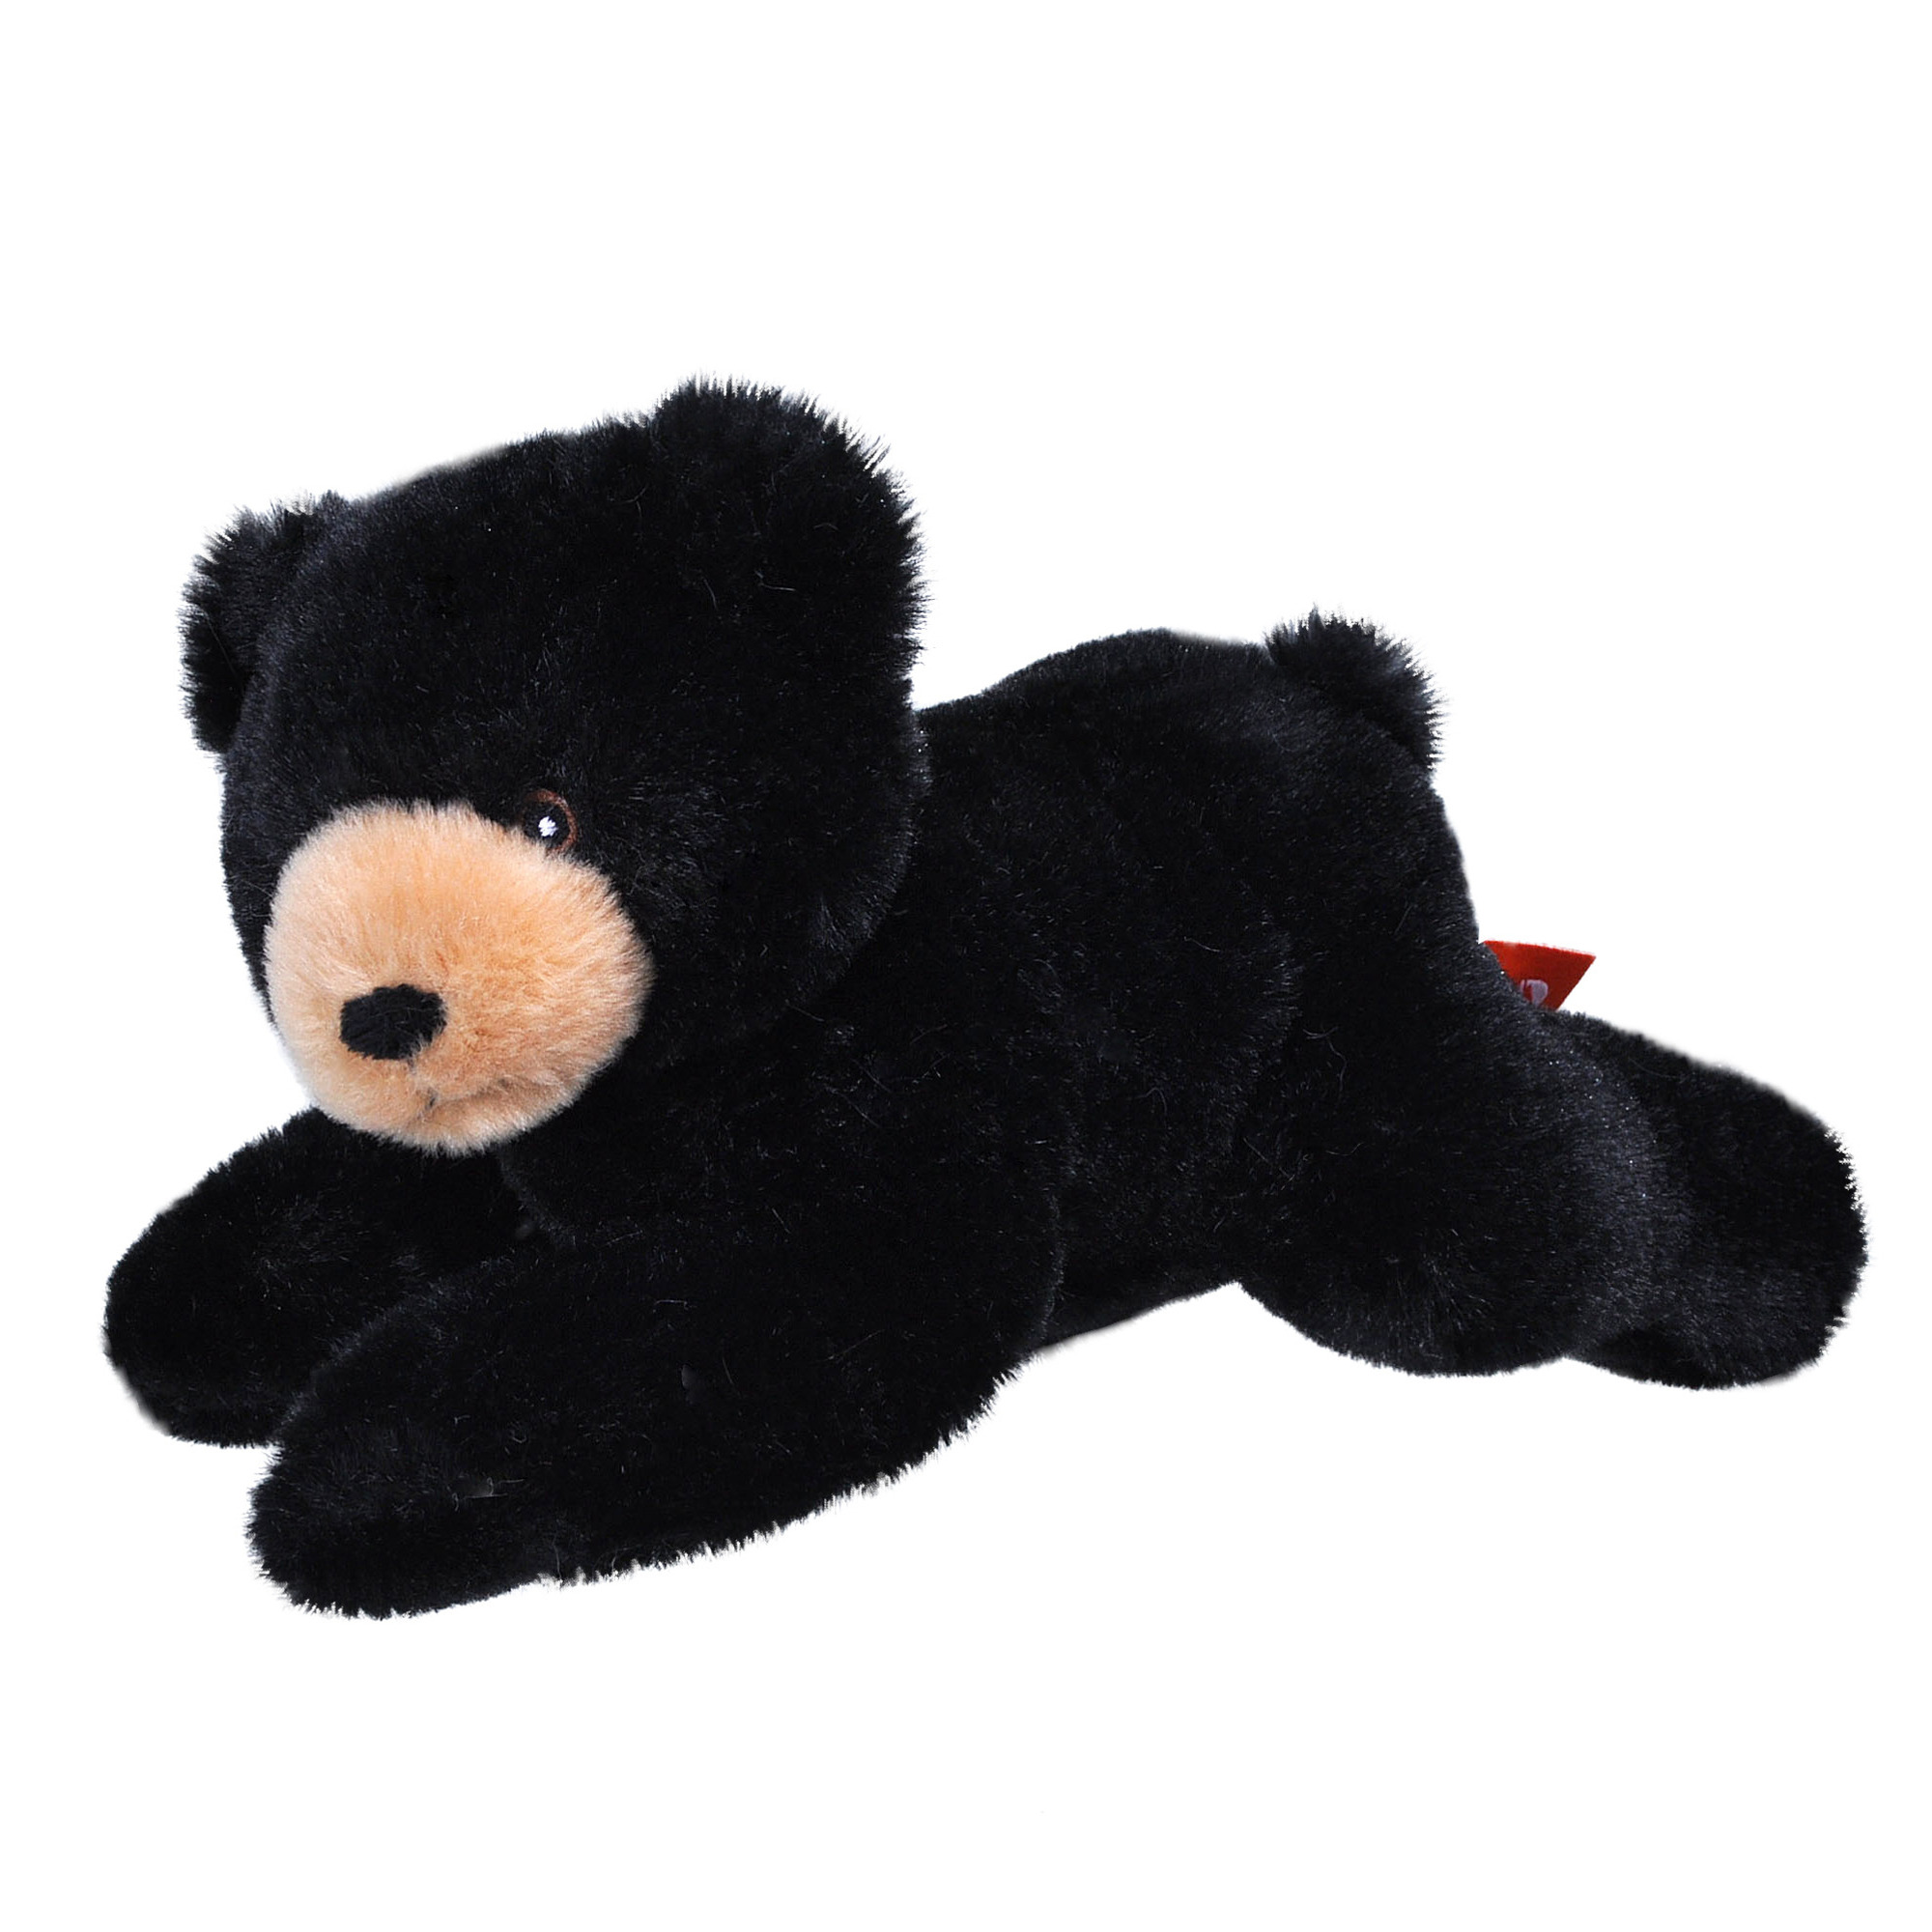 Pluche knuffel dieren Eco-kins zwarte beer van 22 cm